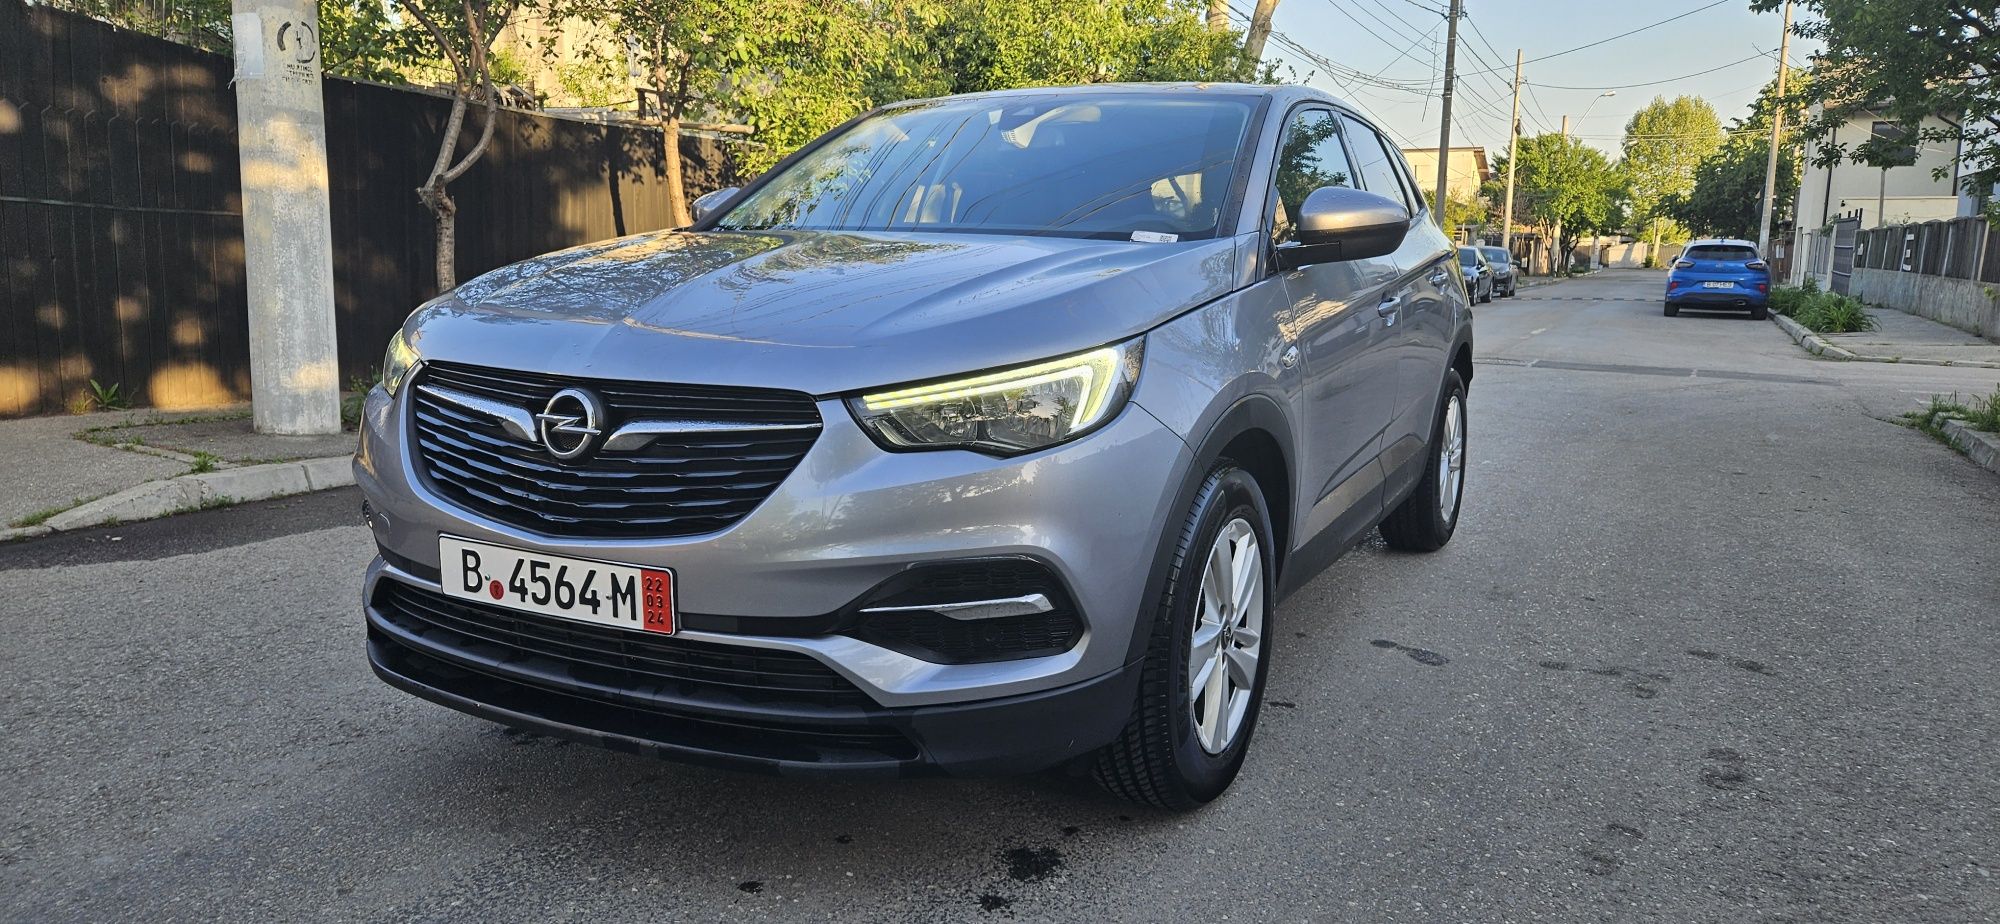 Opel Grandland X 2019 Design Line